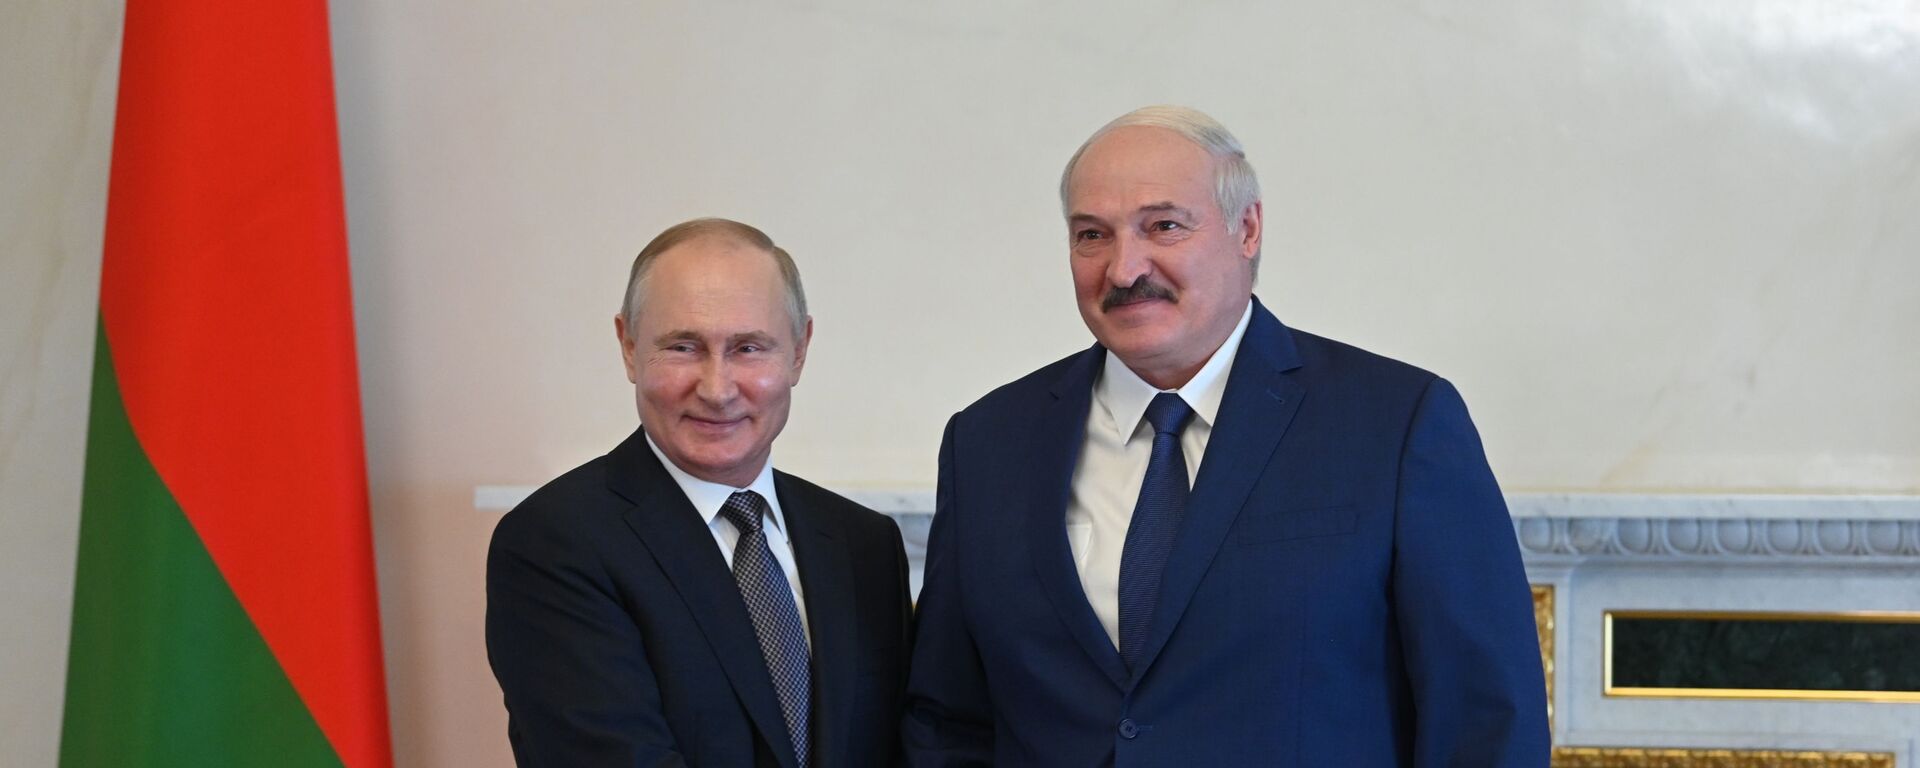 Президент РФ Владимир Путин и президент Белоруссии Александр Лукашенко - Sputnik Молдова, 1920, 13.07.2021